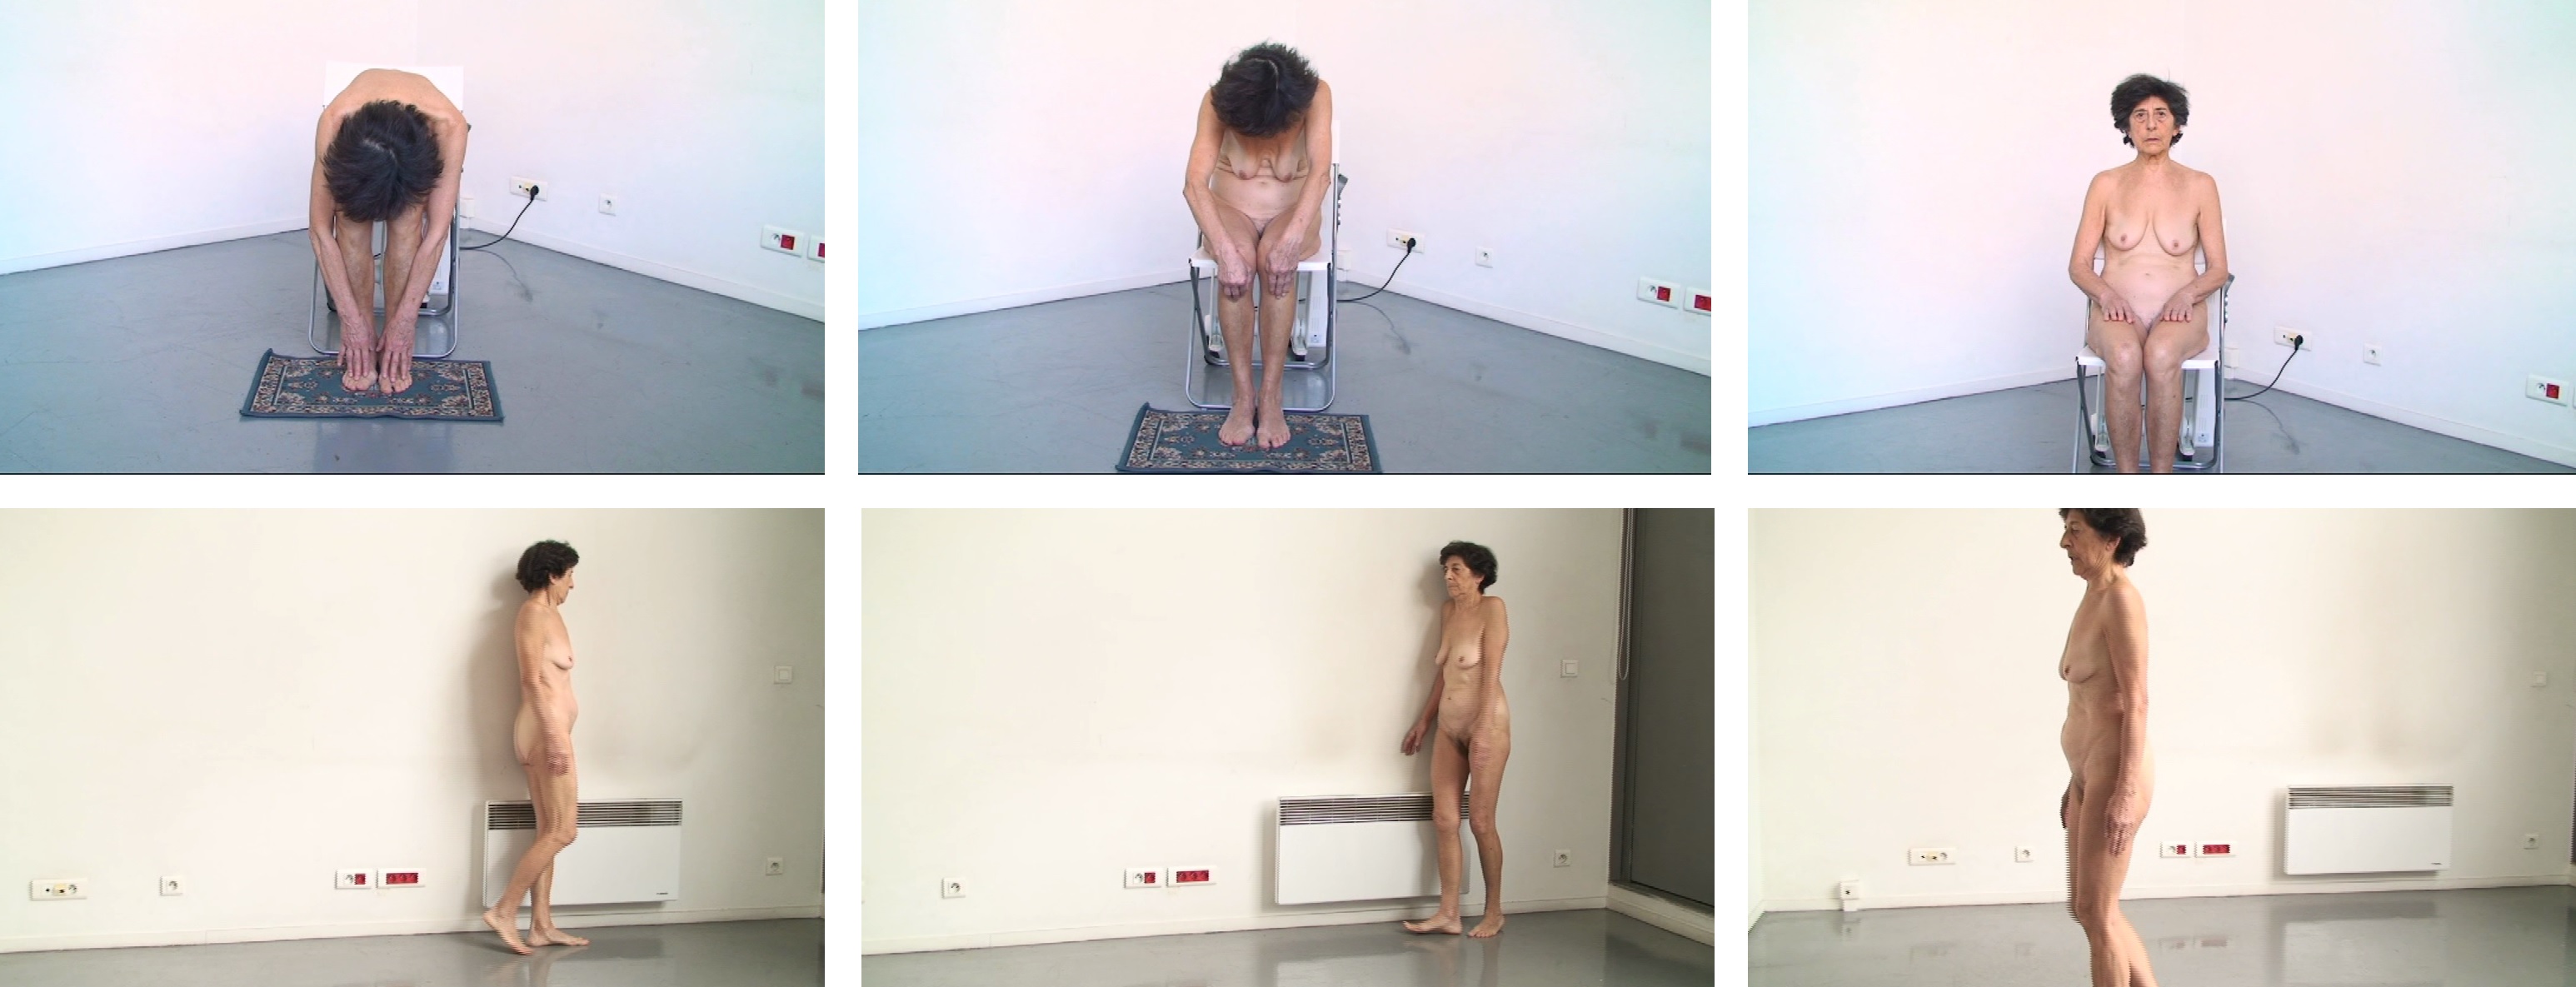 Ferrer Esther . Acciones corporales, íntimo y personal performance (2013)